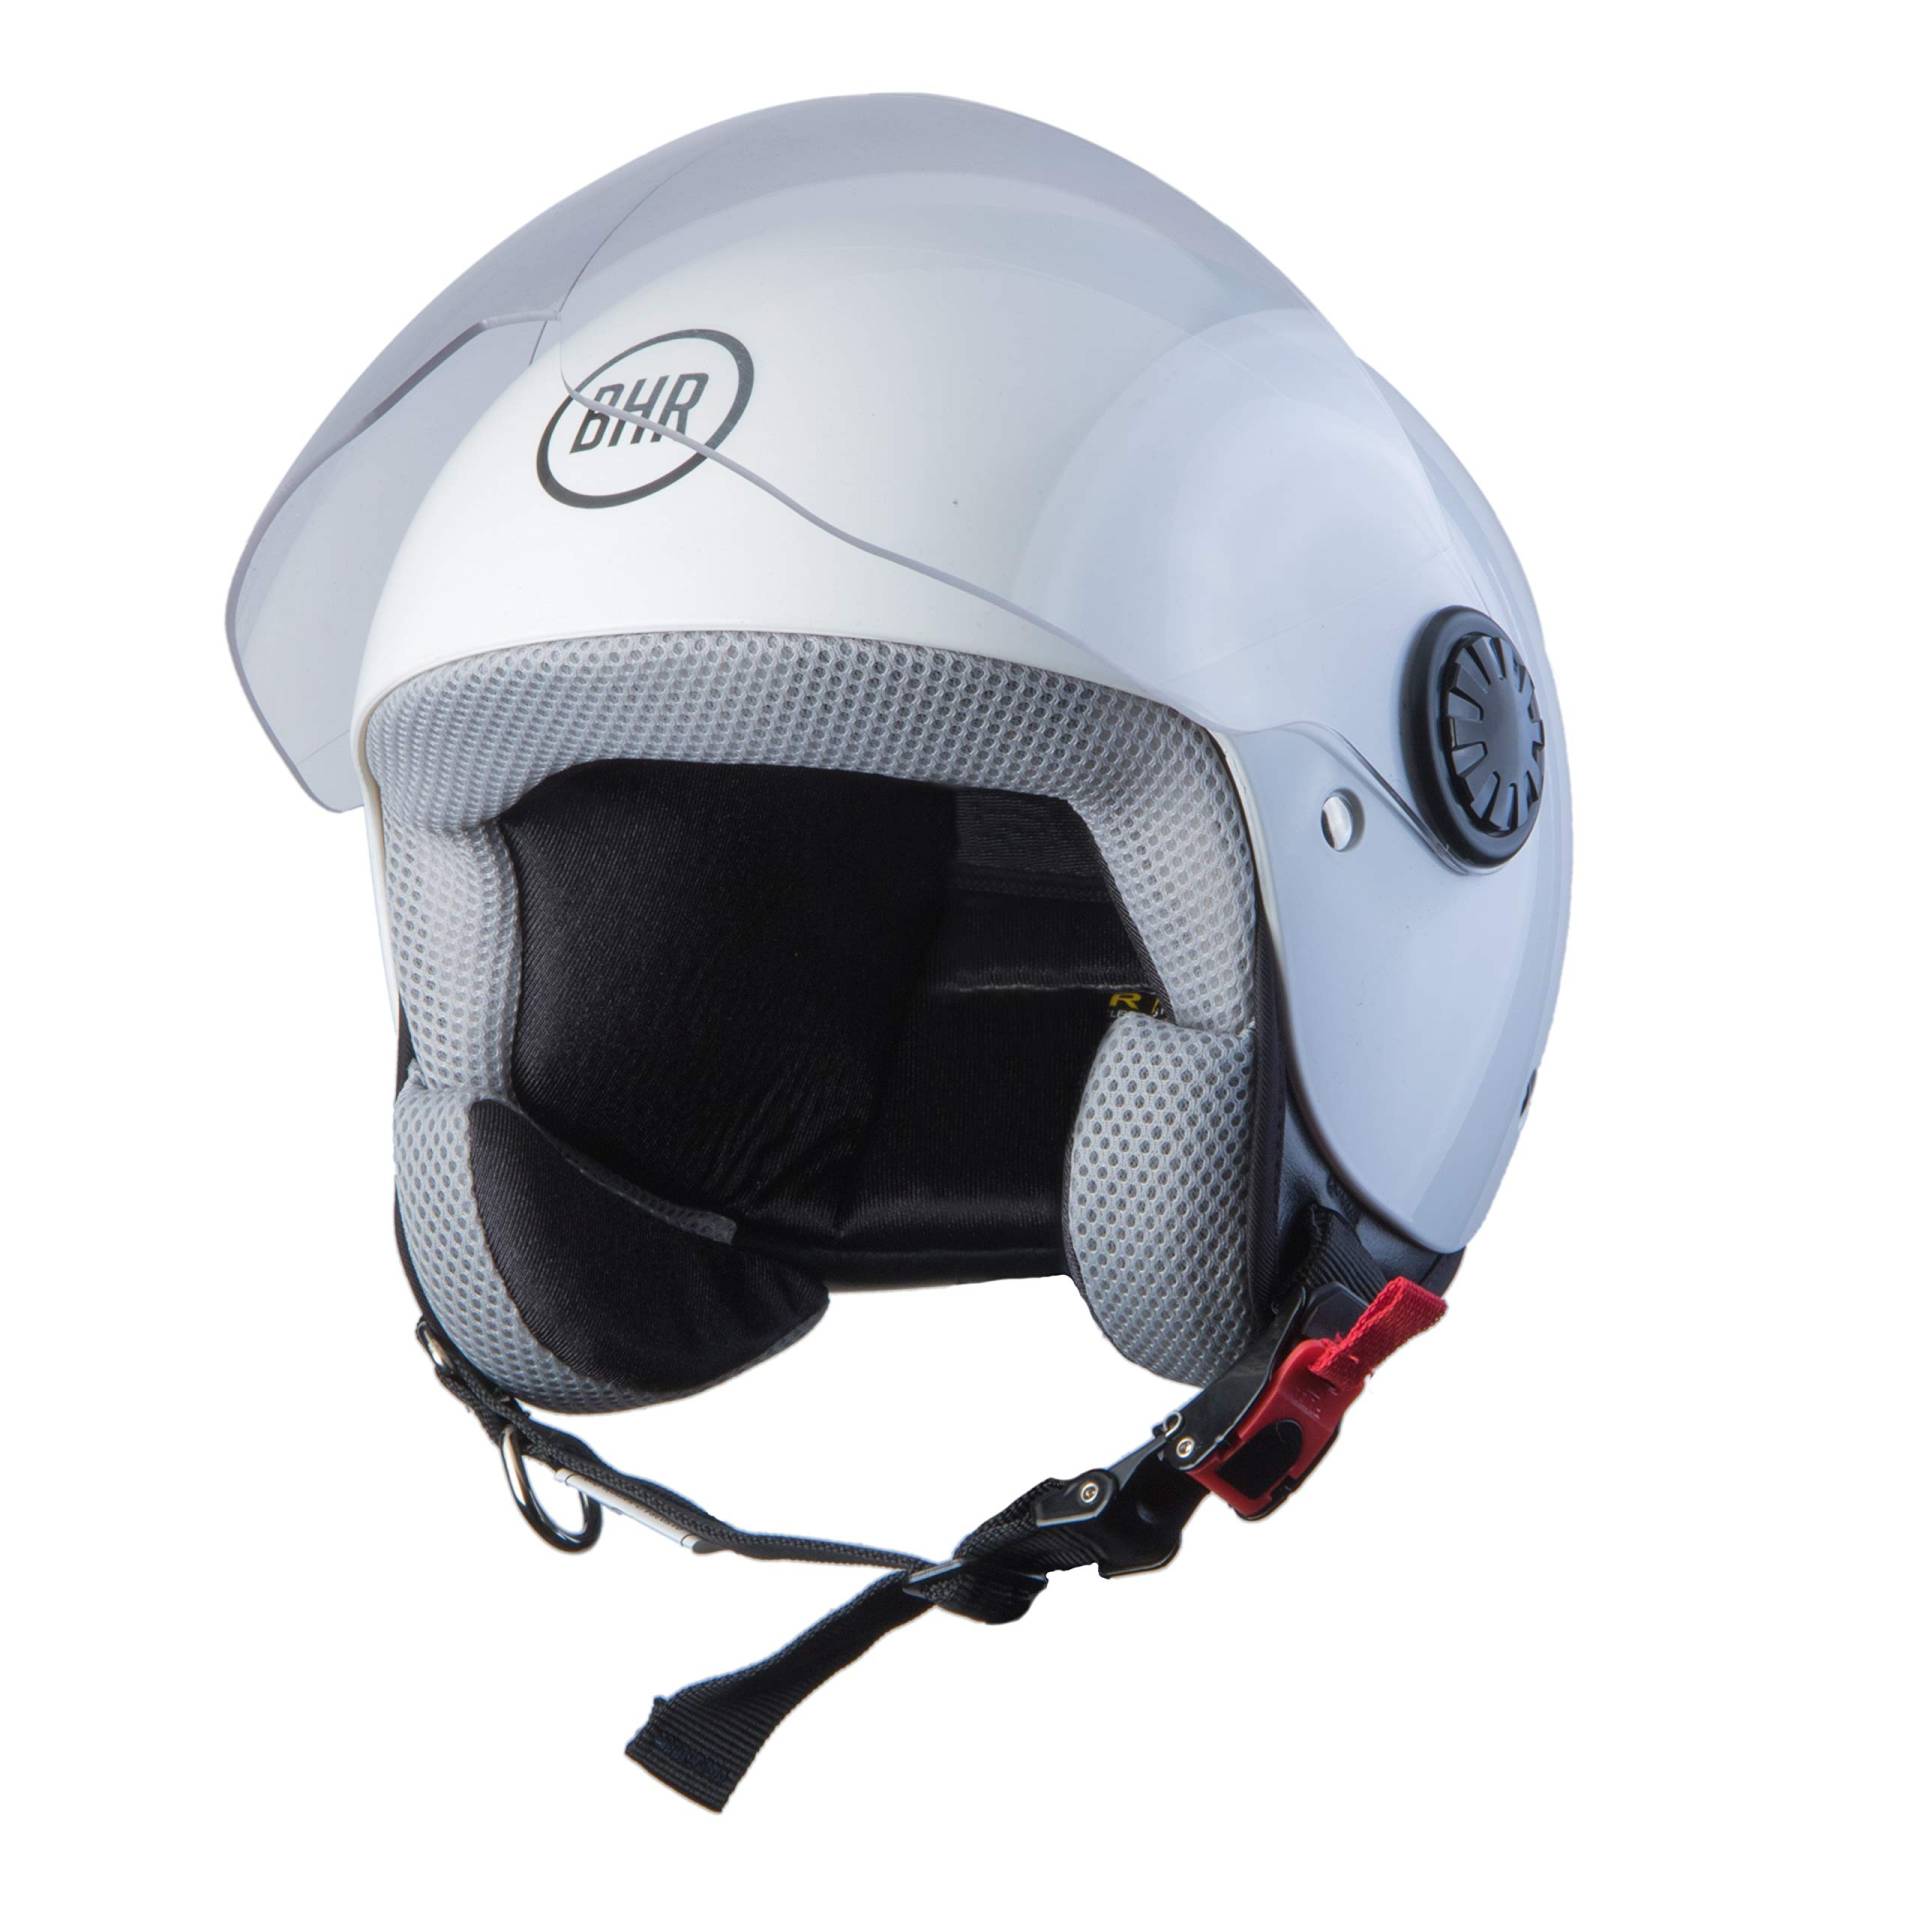 BHR Helmets 806 KID Motorradhelm Jugend Unisex, Weiss, M von BHR